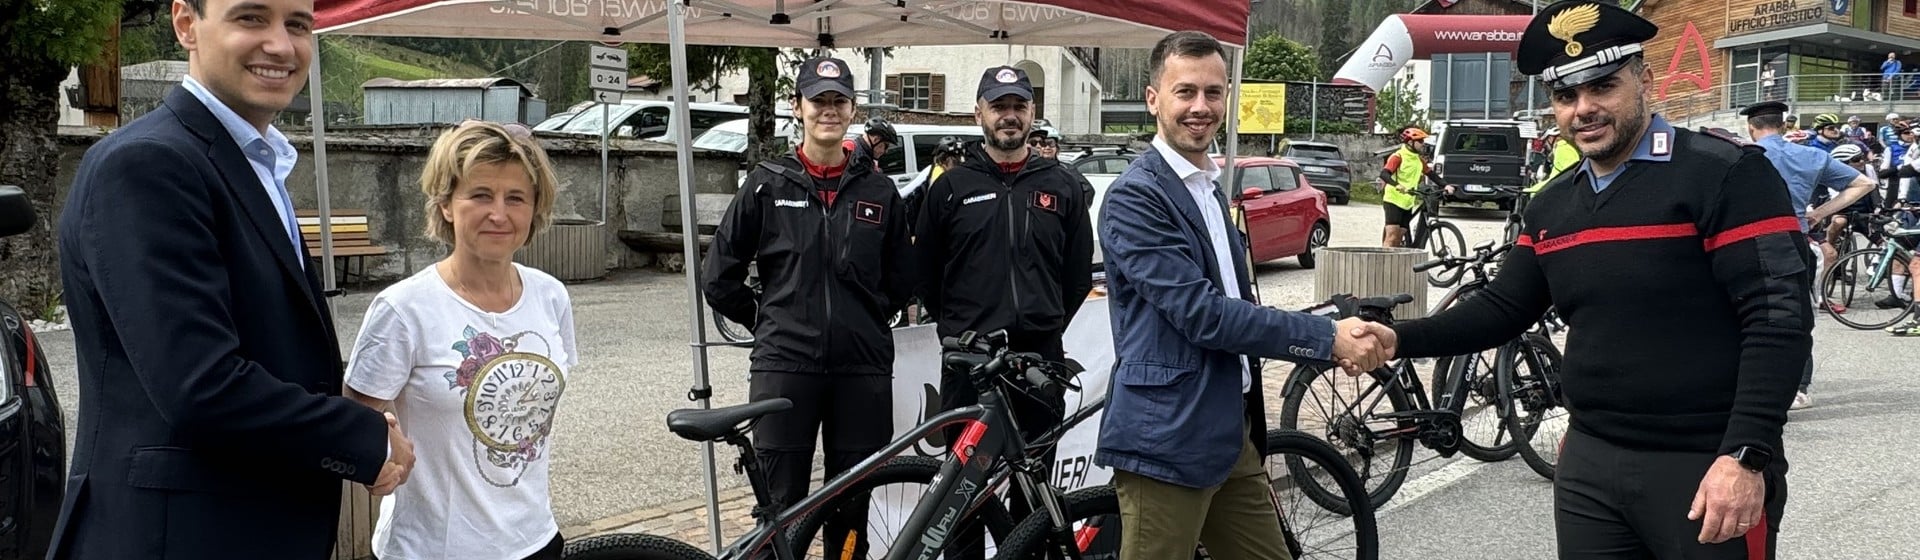 Smartway Dona Due Biciclette Elettriche ad Arabba Fodom Dolomites per un Pattugliamento Eco-Sostenibile